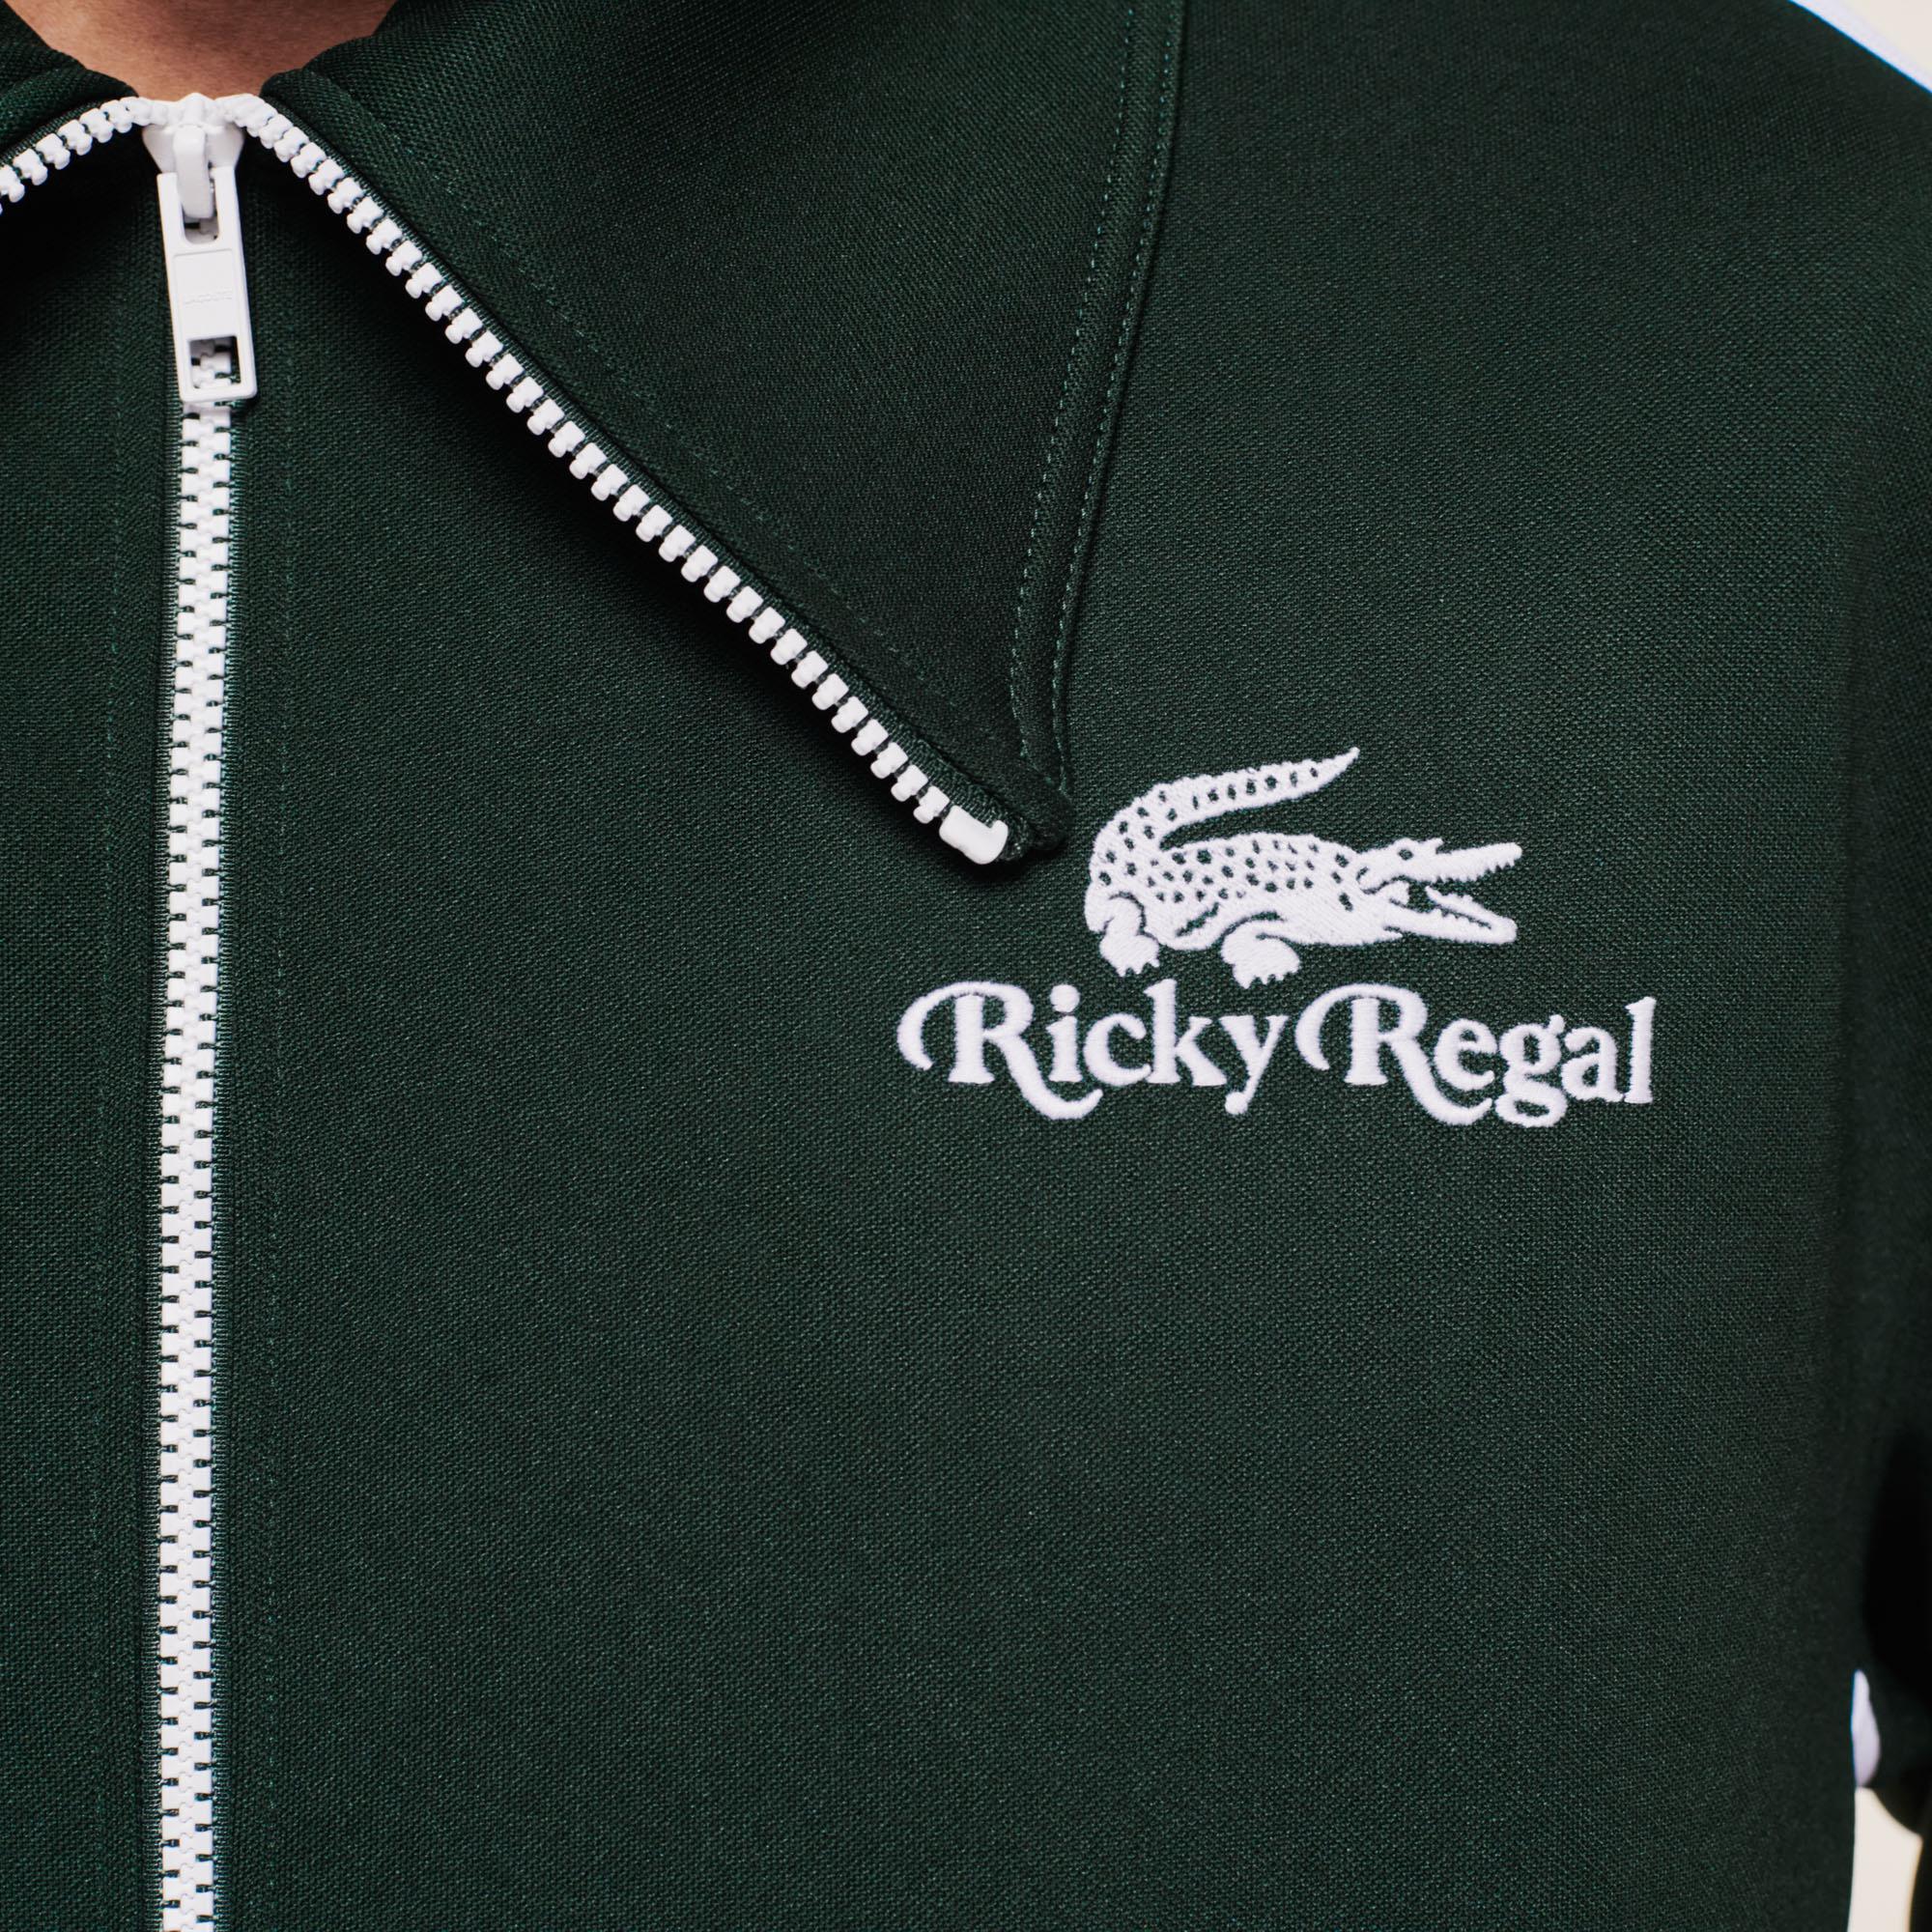 Lacoste x Ricky Regal Unisex Fermuarlı Yeşil Sweatshirt. 5